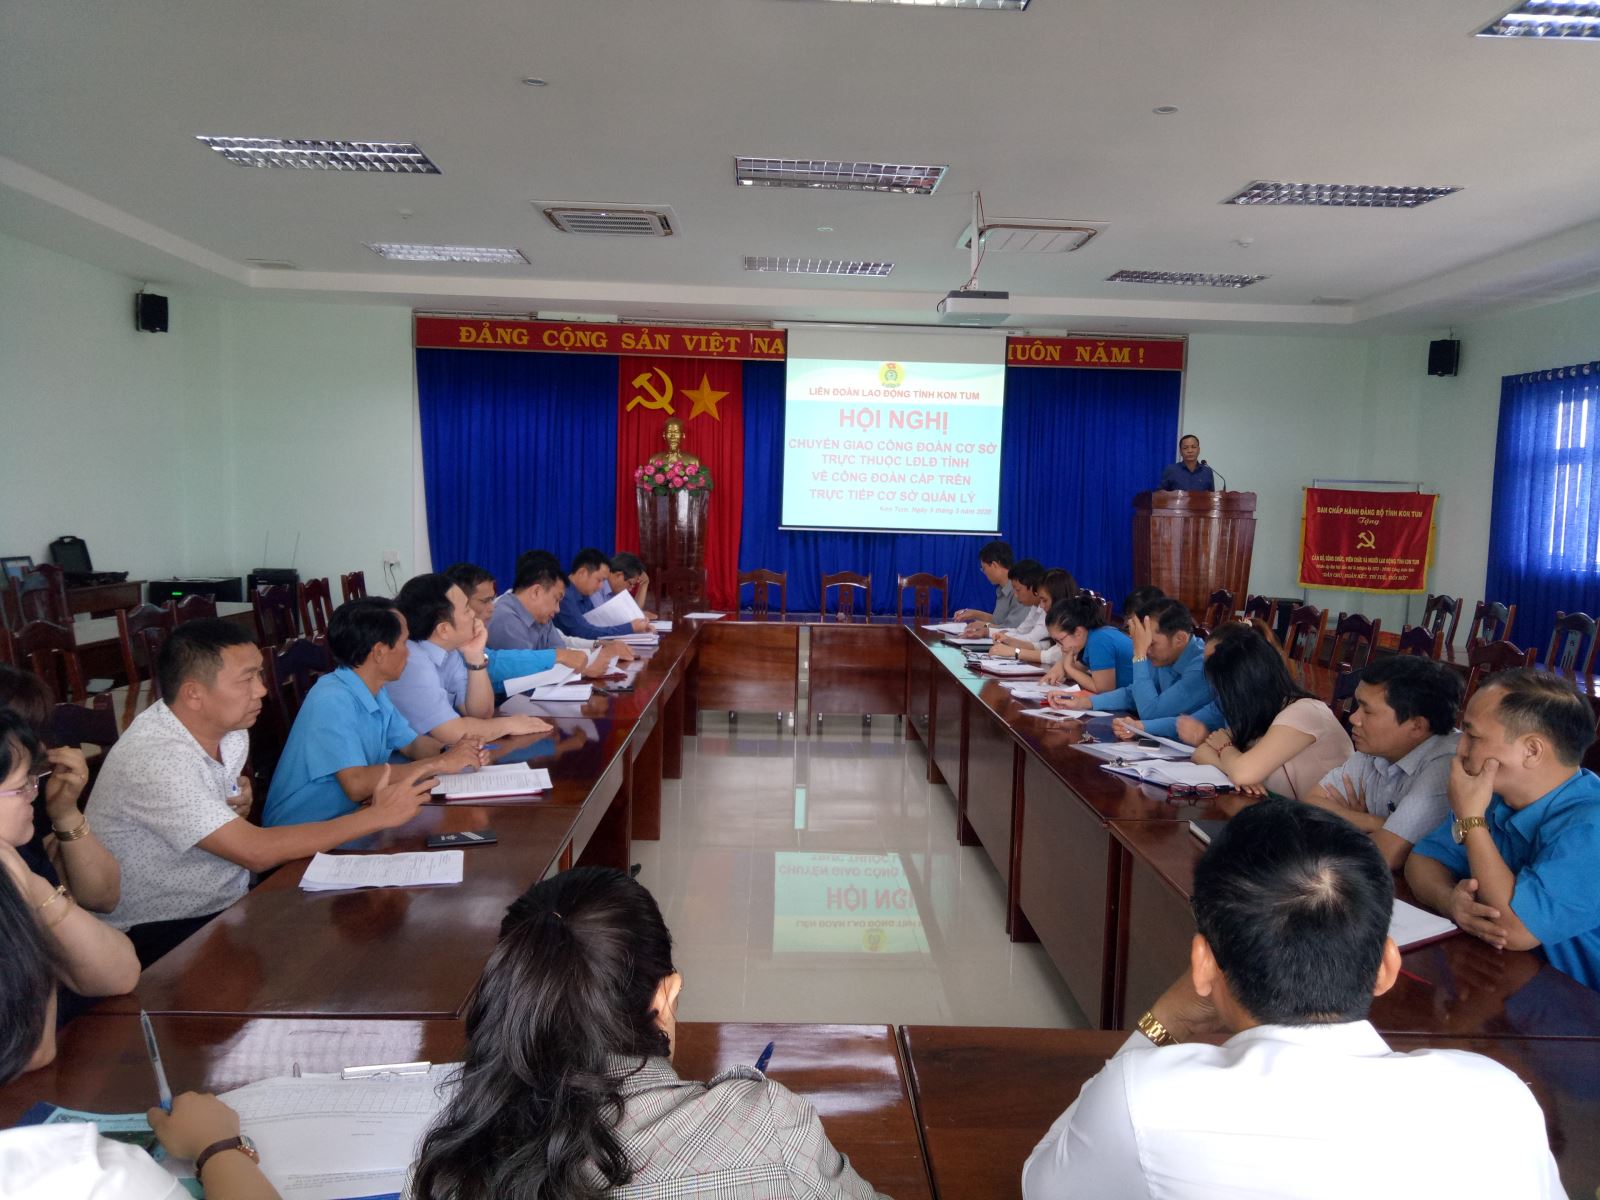 Liên đoàn Lao động tỉnh Kon Tum tổ chức hội nghị bàn giao các công đoàn cơ sở trực thuộc về Công đoàn cấp trên trực tiếp cơ sở quản lý